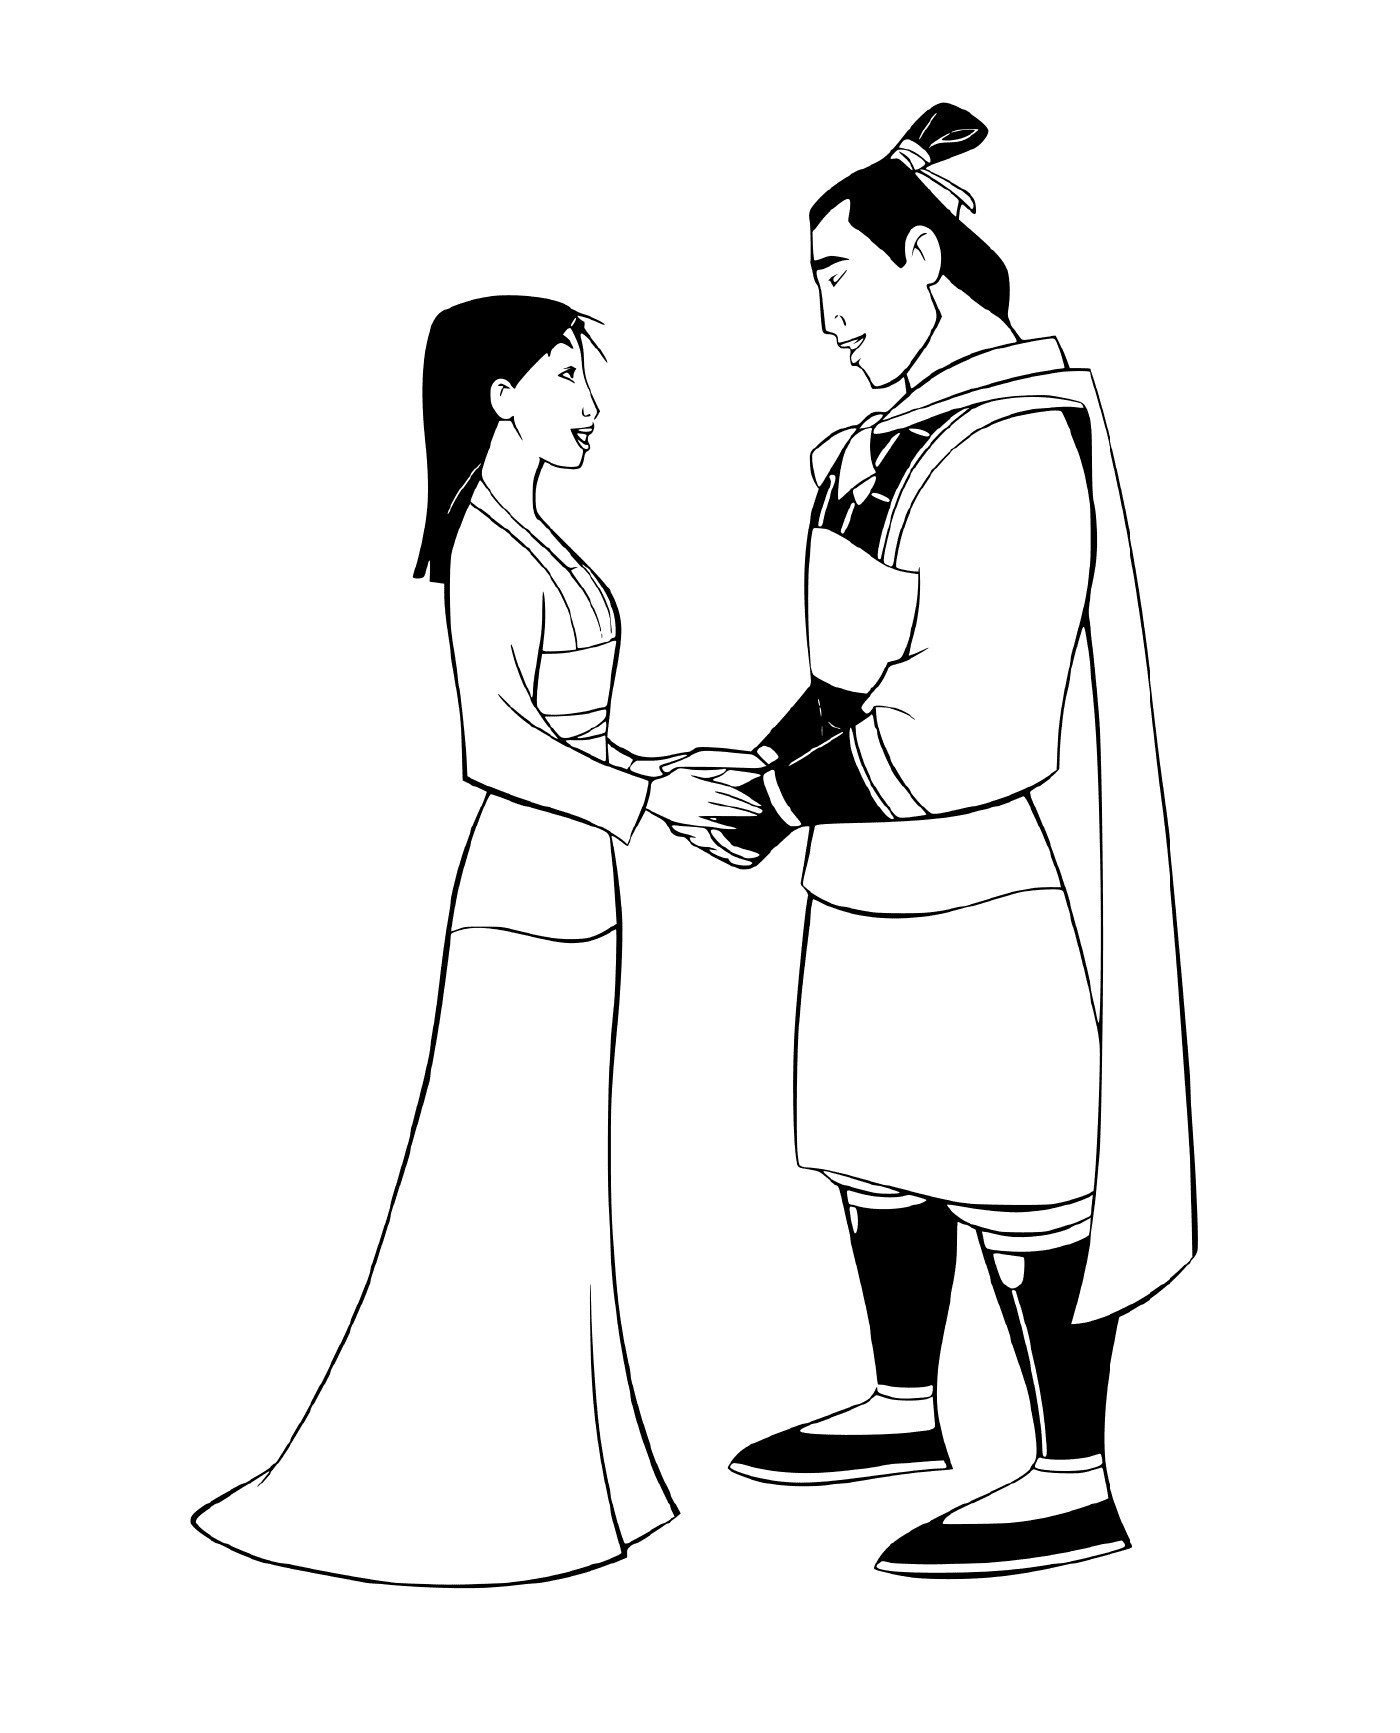  Mulan and Li Shang, accomplices 